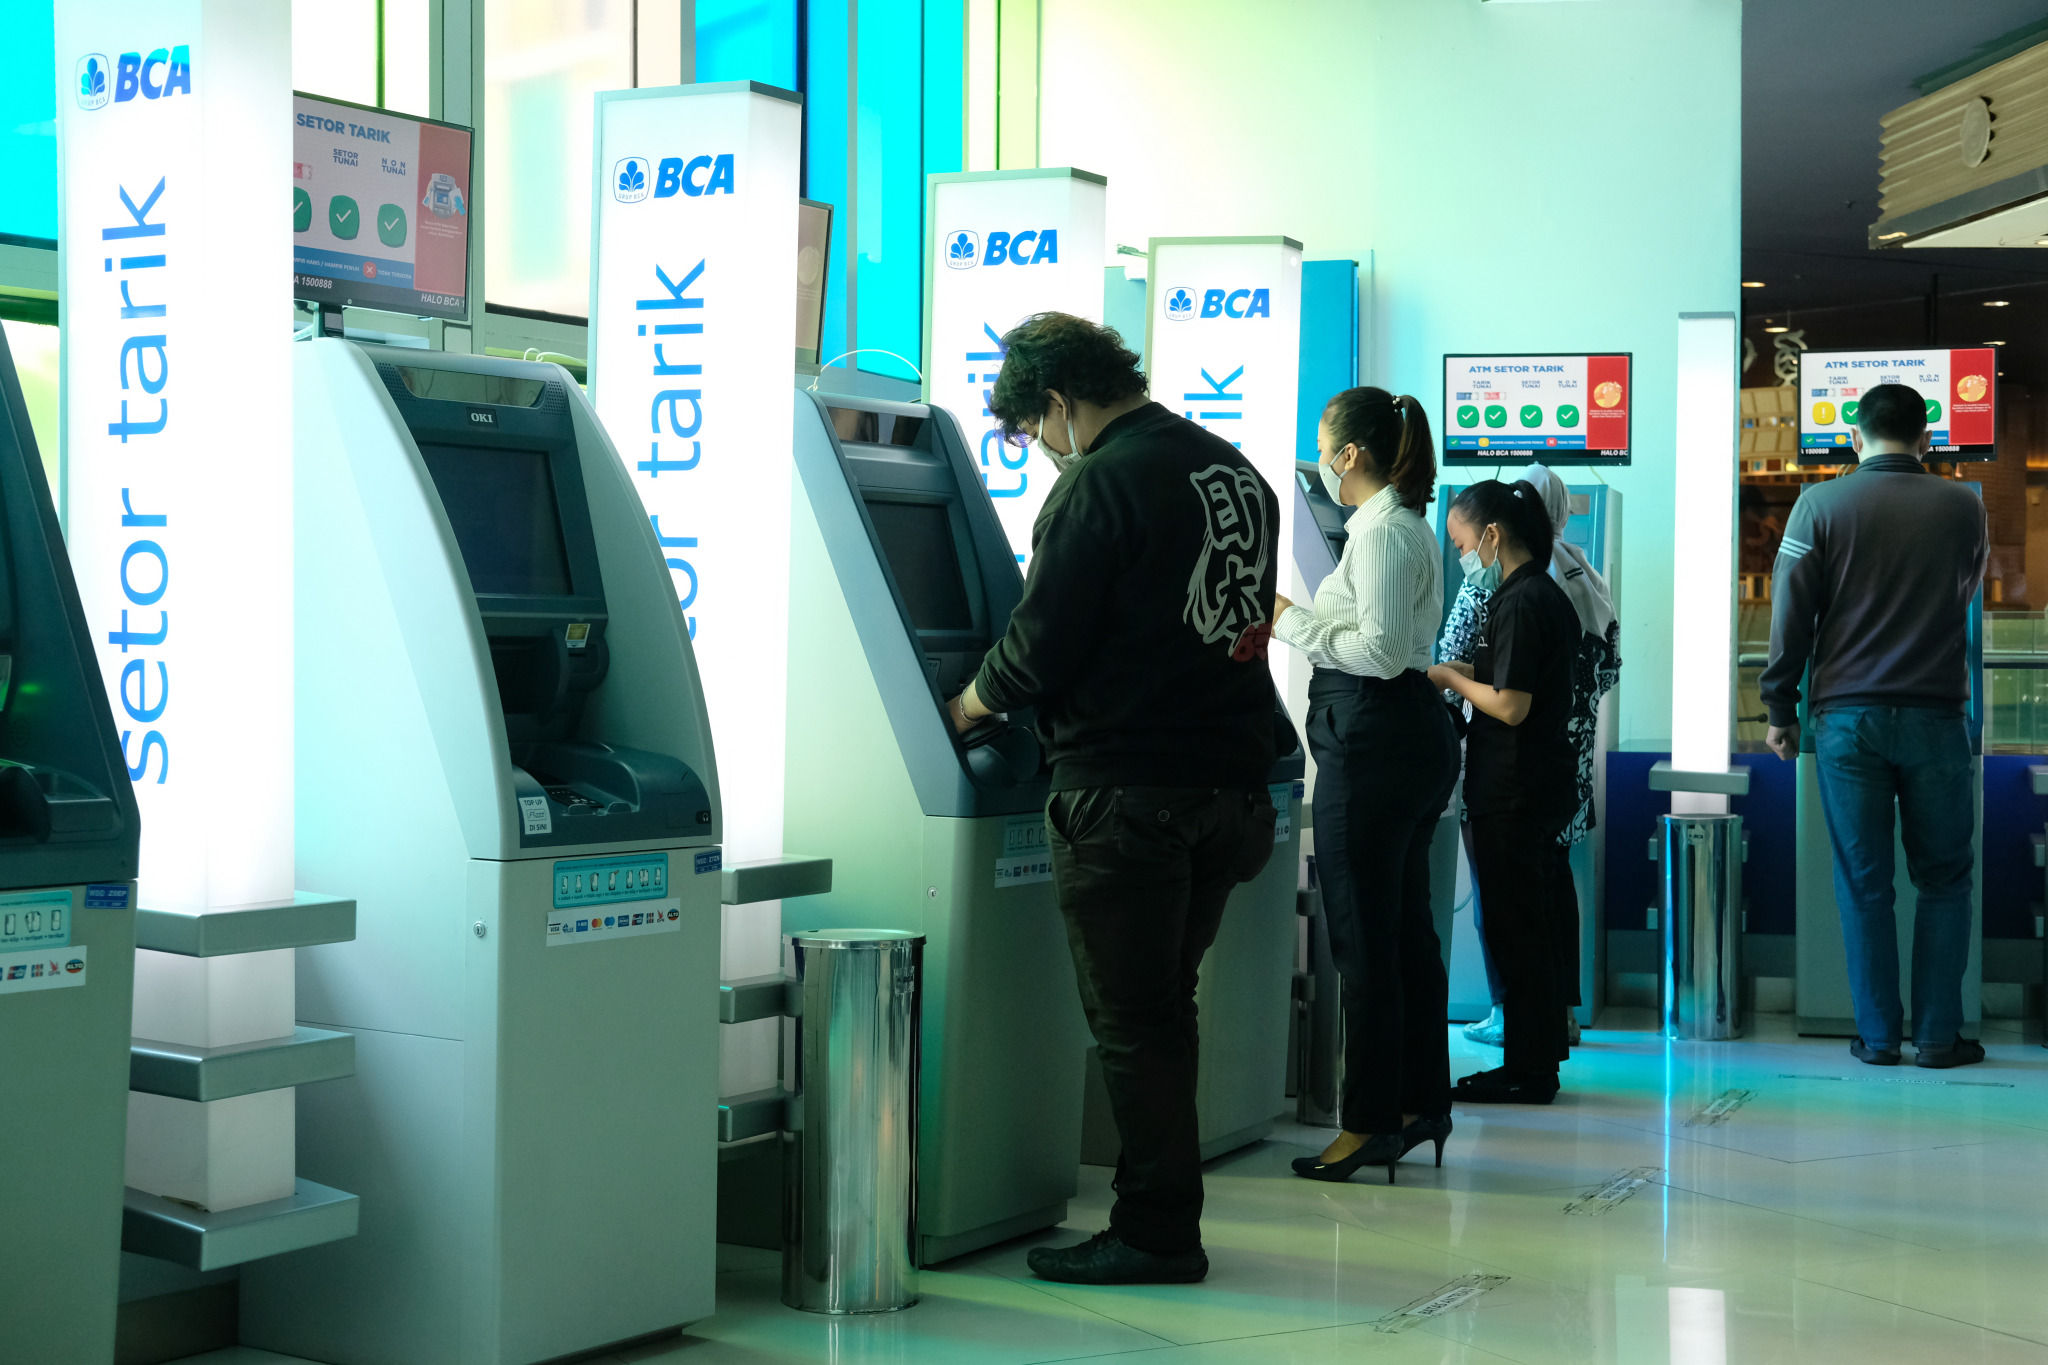 <p>Nasabah melakukan transaksi melalui mesin anjungan tunai mandiri (ATM) di gerai BCA Mal Gandaria City, Jakarta Selatan, Kamis, 22 Oktober 2020. Foto: Ismail Pohan/TrenAsia</p>
